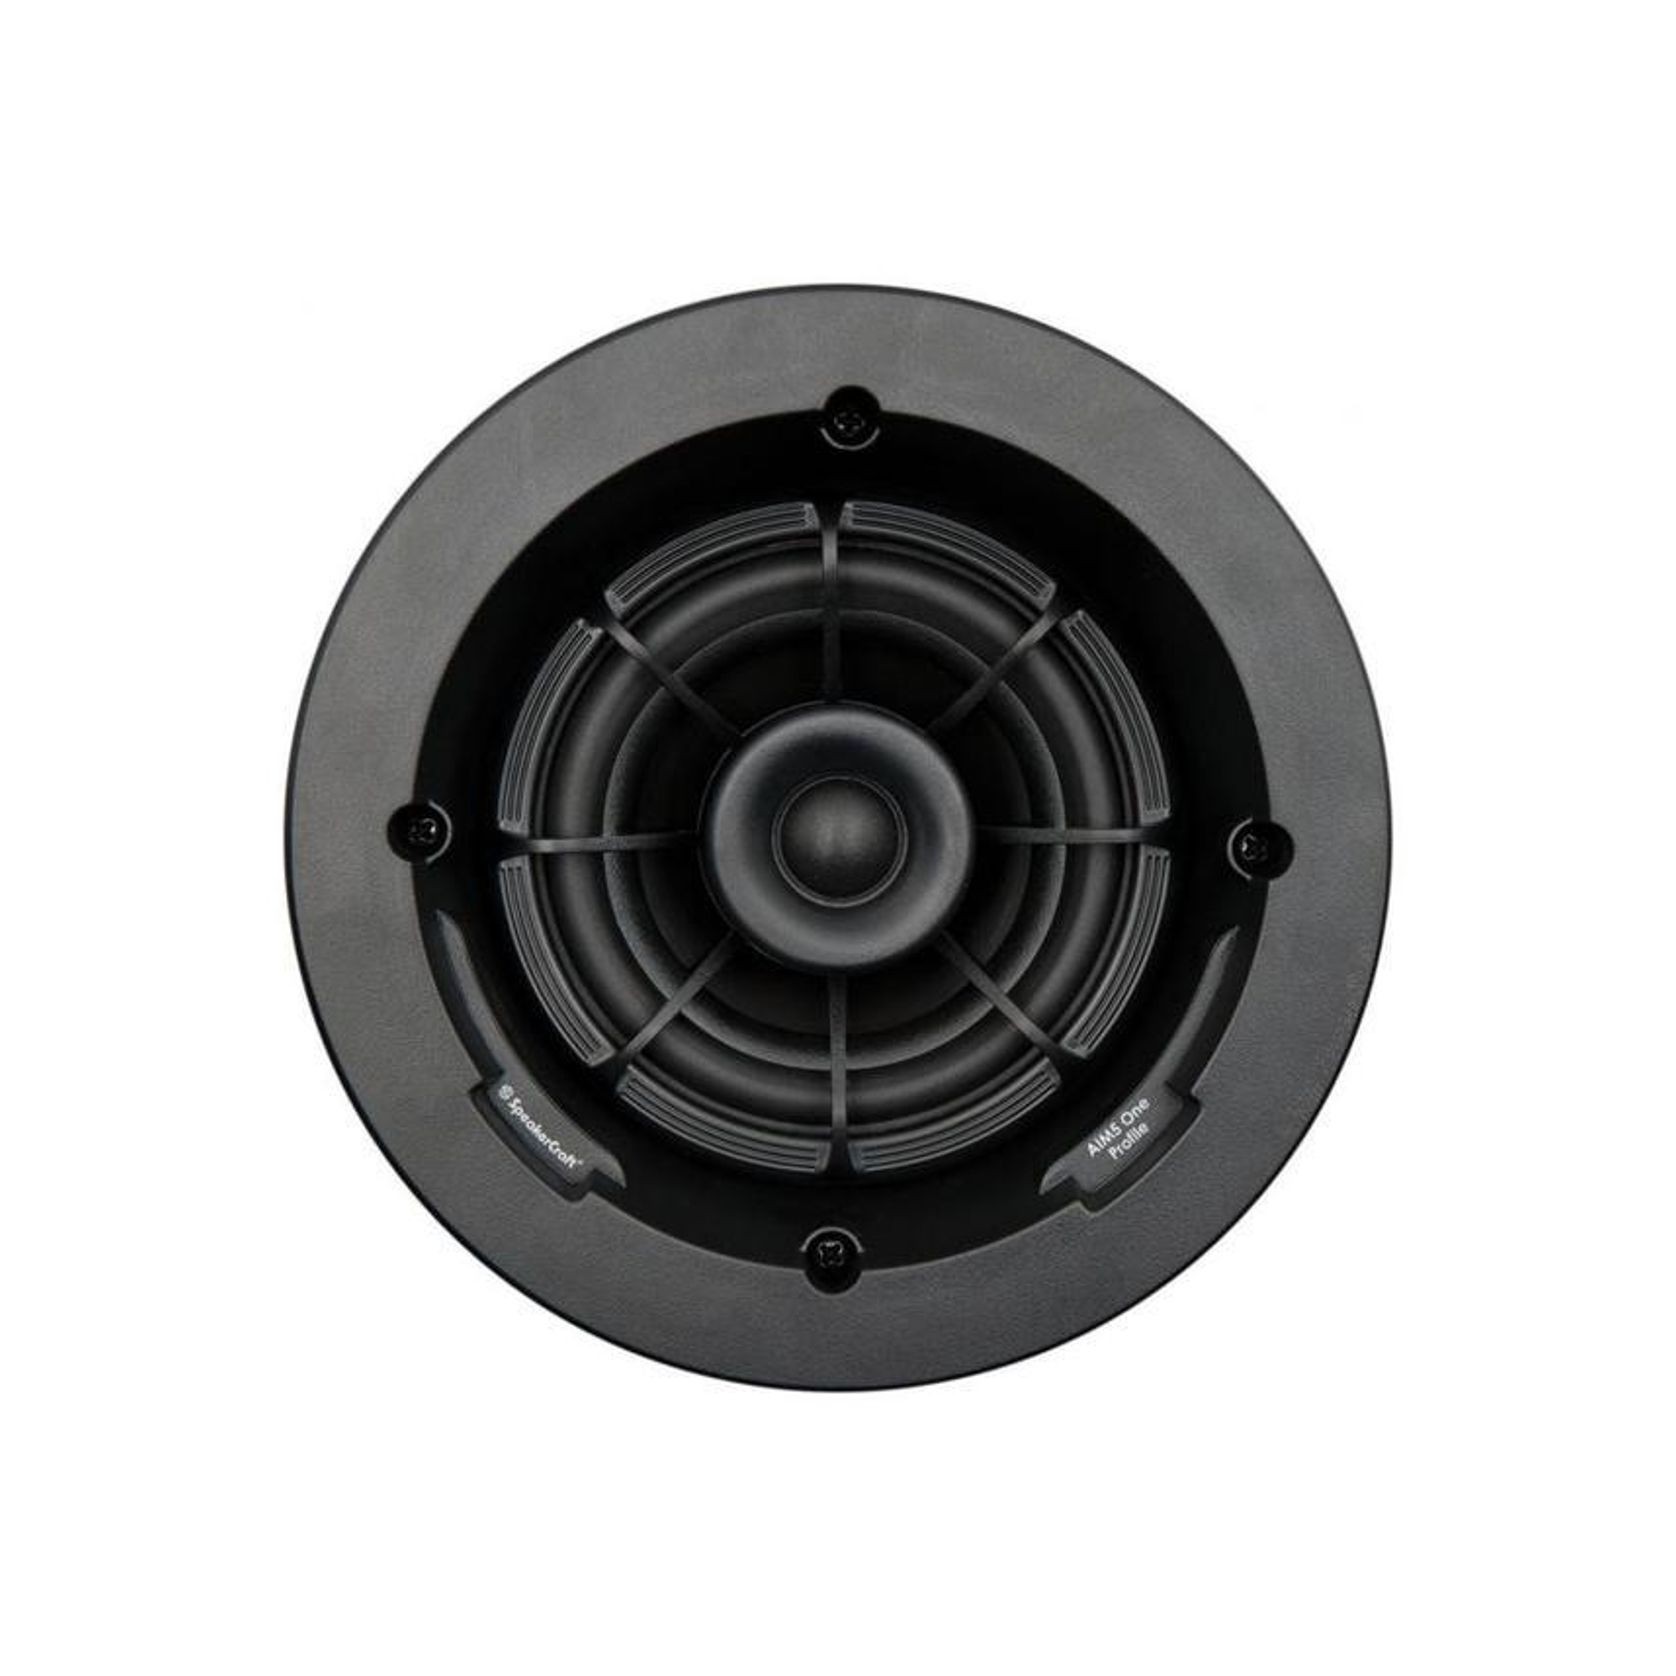 Speakercraft Aim7 Two In- Ceiling Speakers gallery detail image